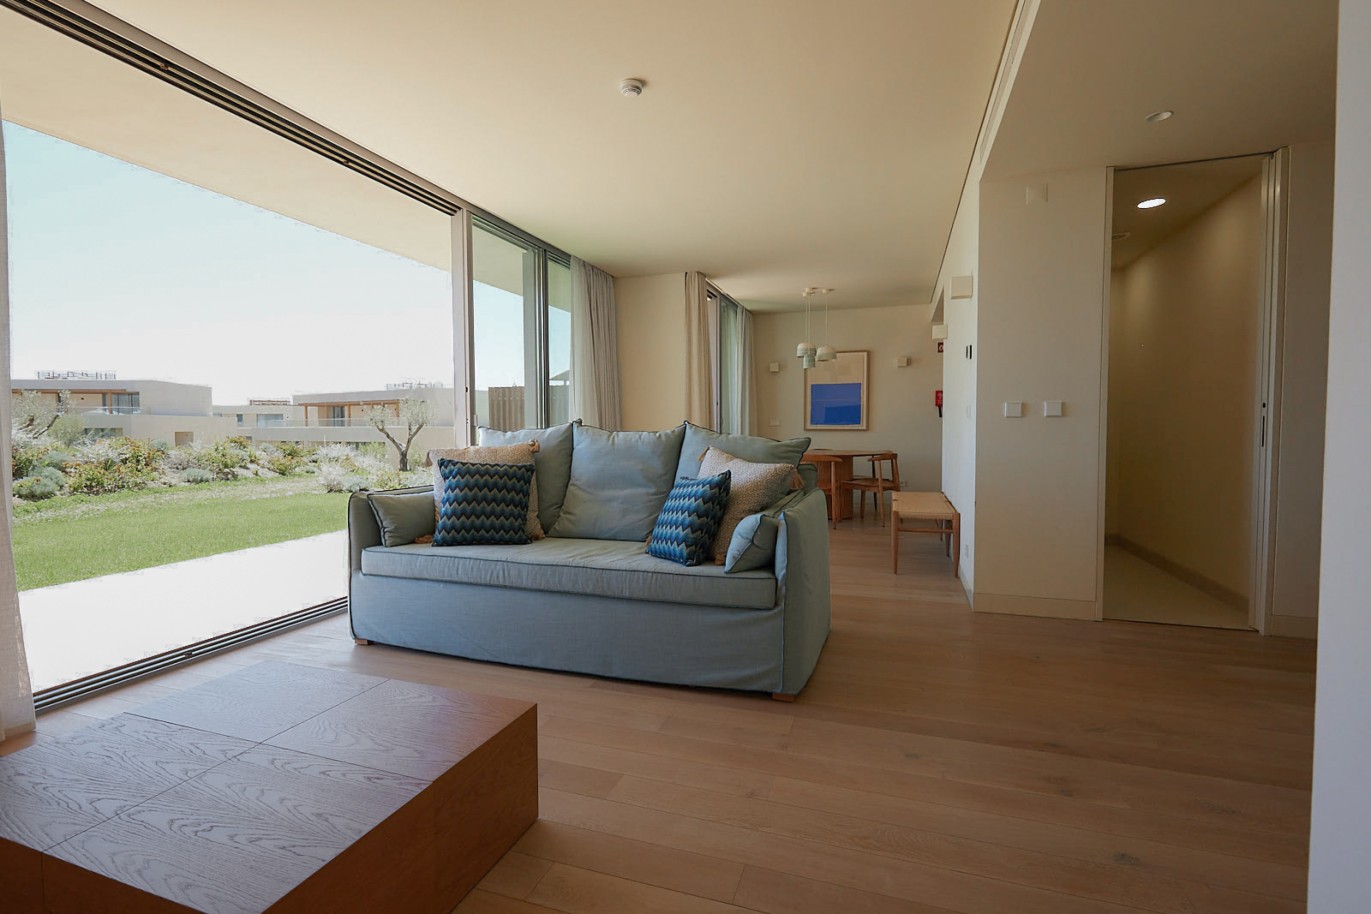 Piso de 2 dormitorios en complejo, en venta en Porches, Algarve_230492